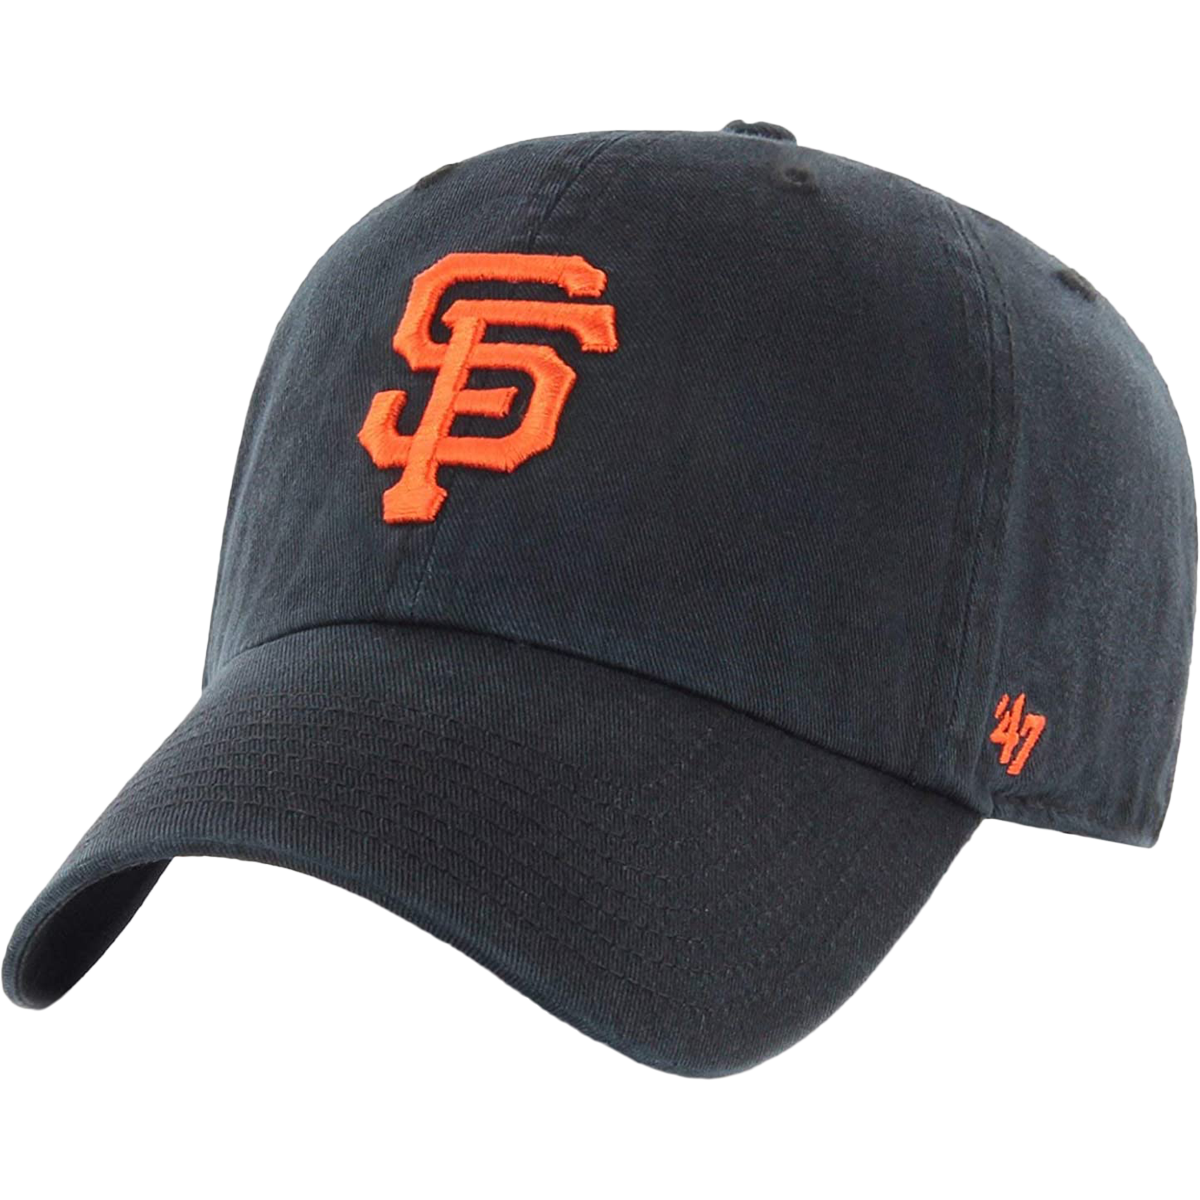 Team Effort San Francisco Giants Hat Clip